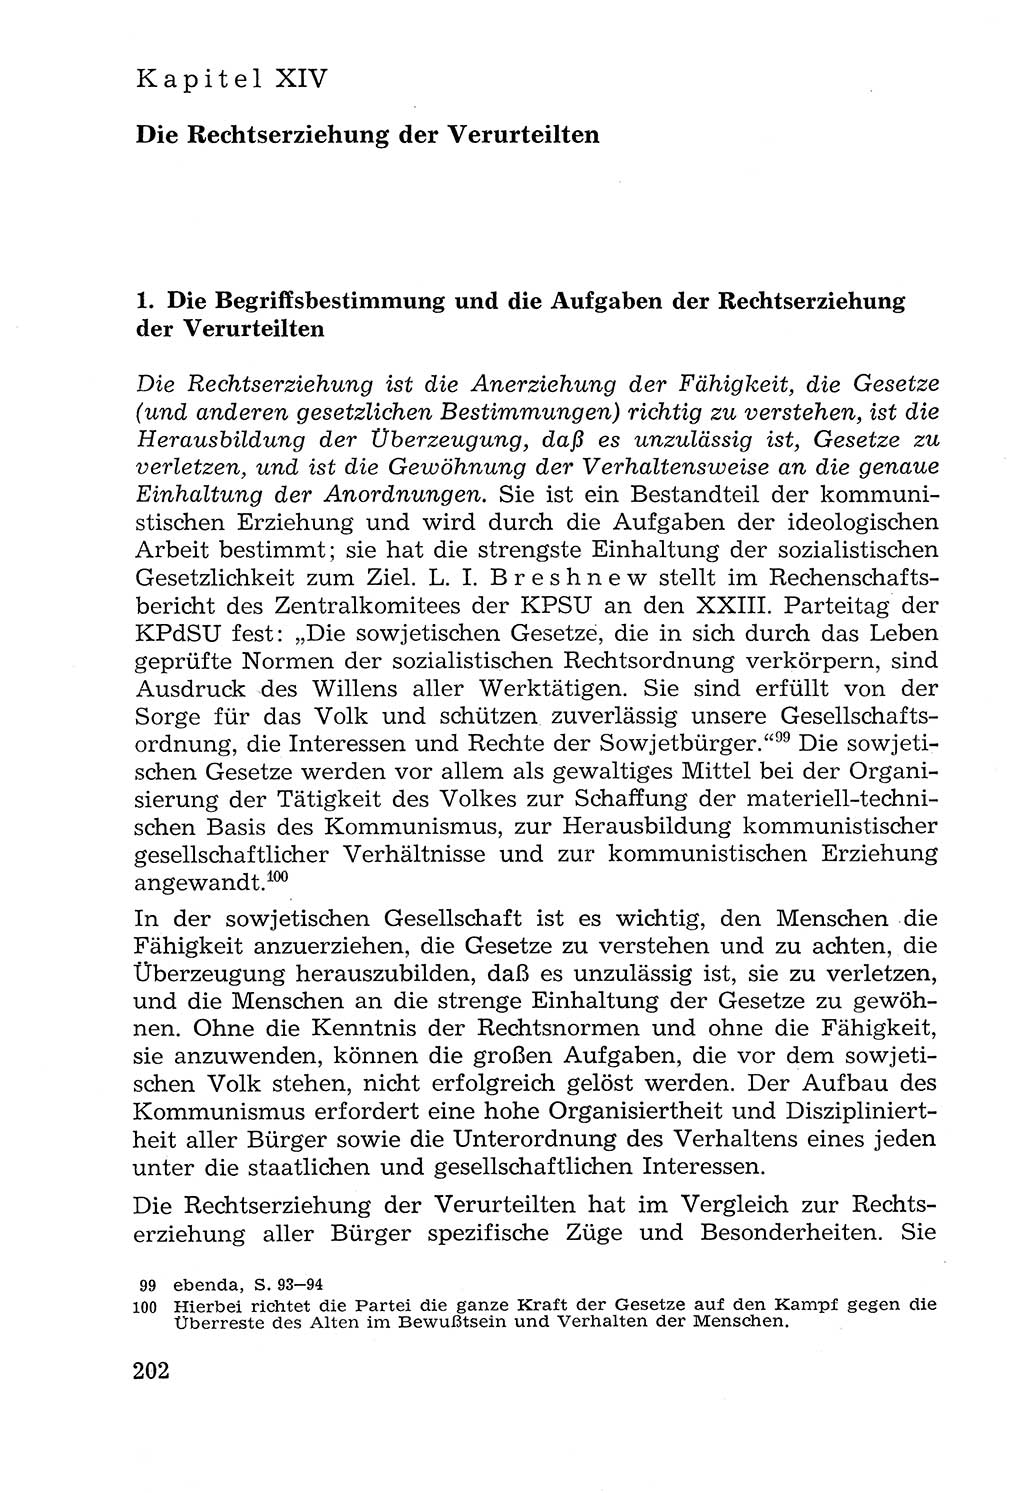 Lehrbuch der Strafvollzugspädagogik [Deutsche Demokratische Republik (DDR)] 1969, Seite 202 (Lb. SV-Pd. DDR 1969, S. 202)